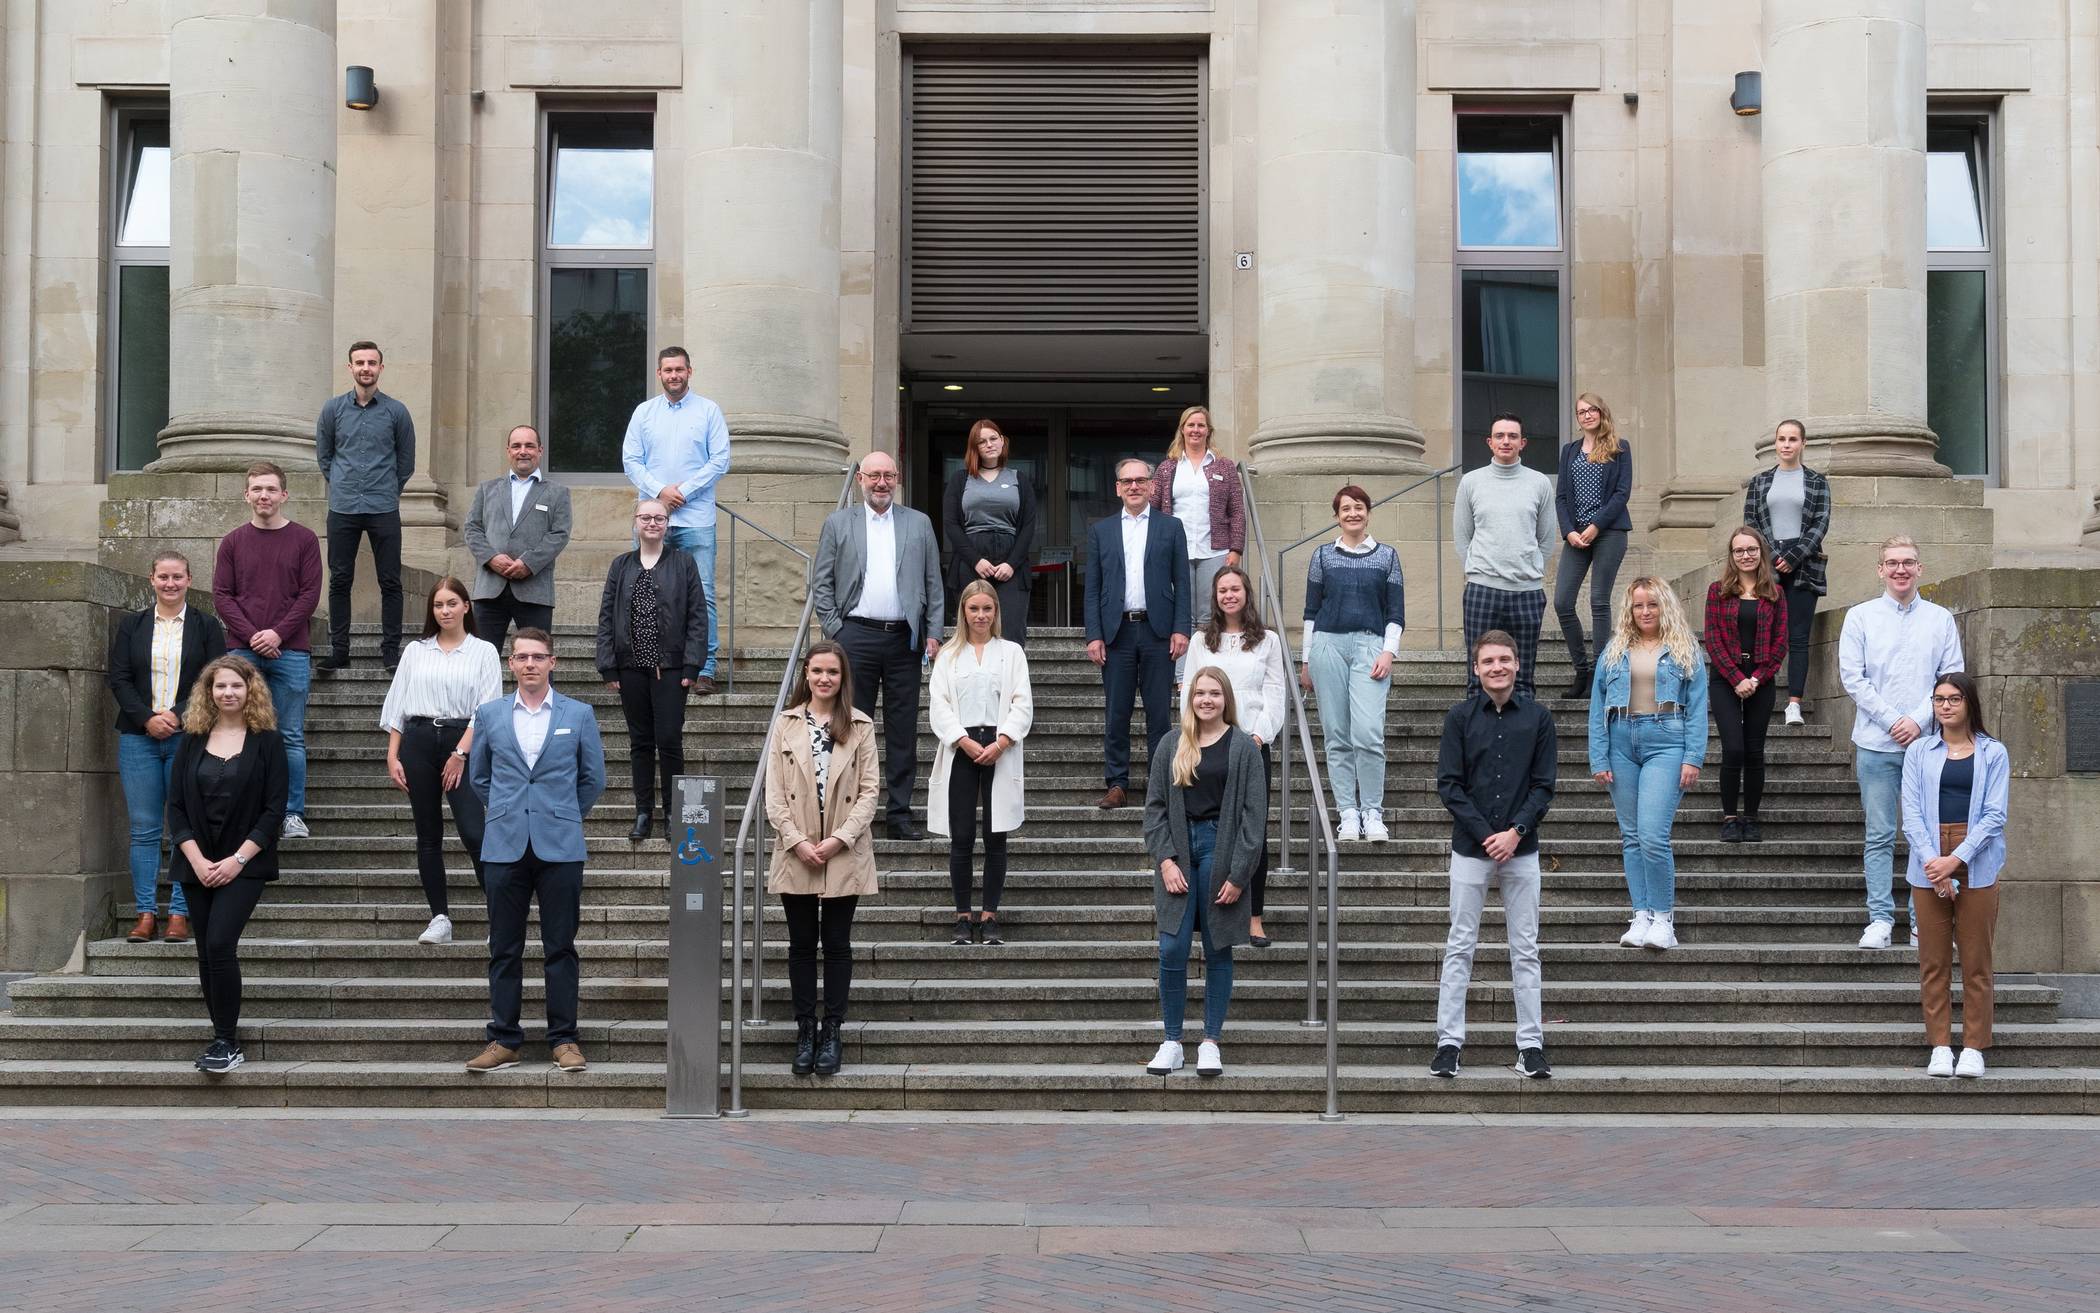 23 neue Auszubildende für das Wuppertaler Rathaus